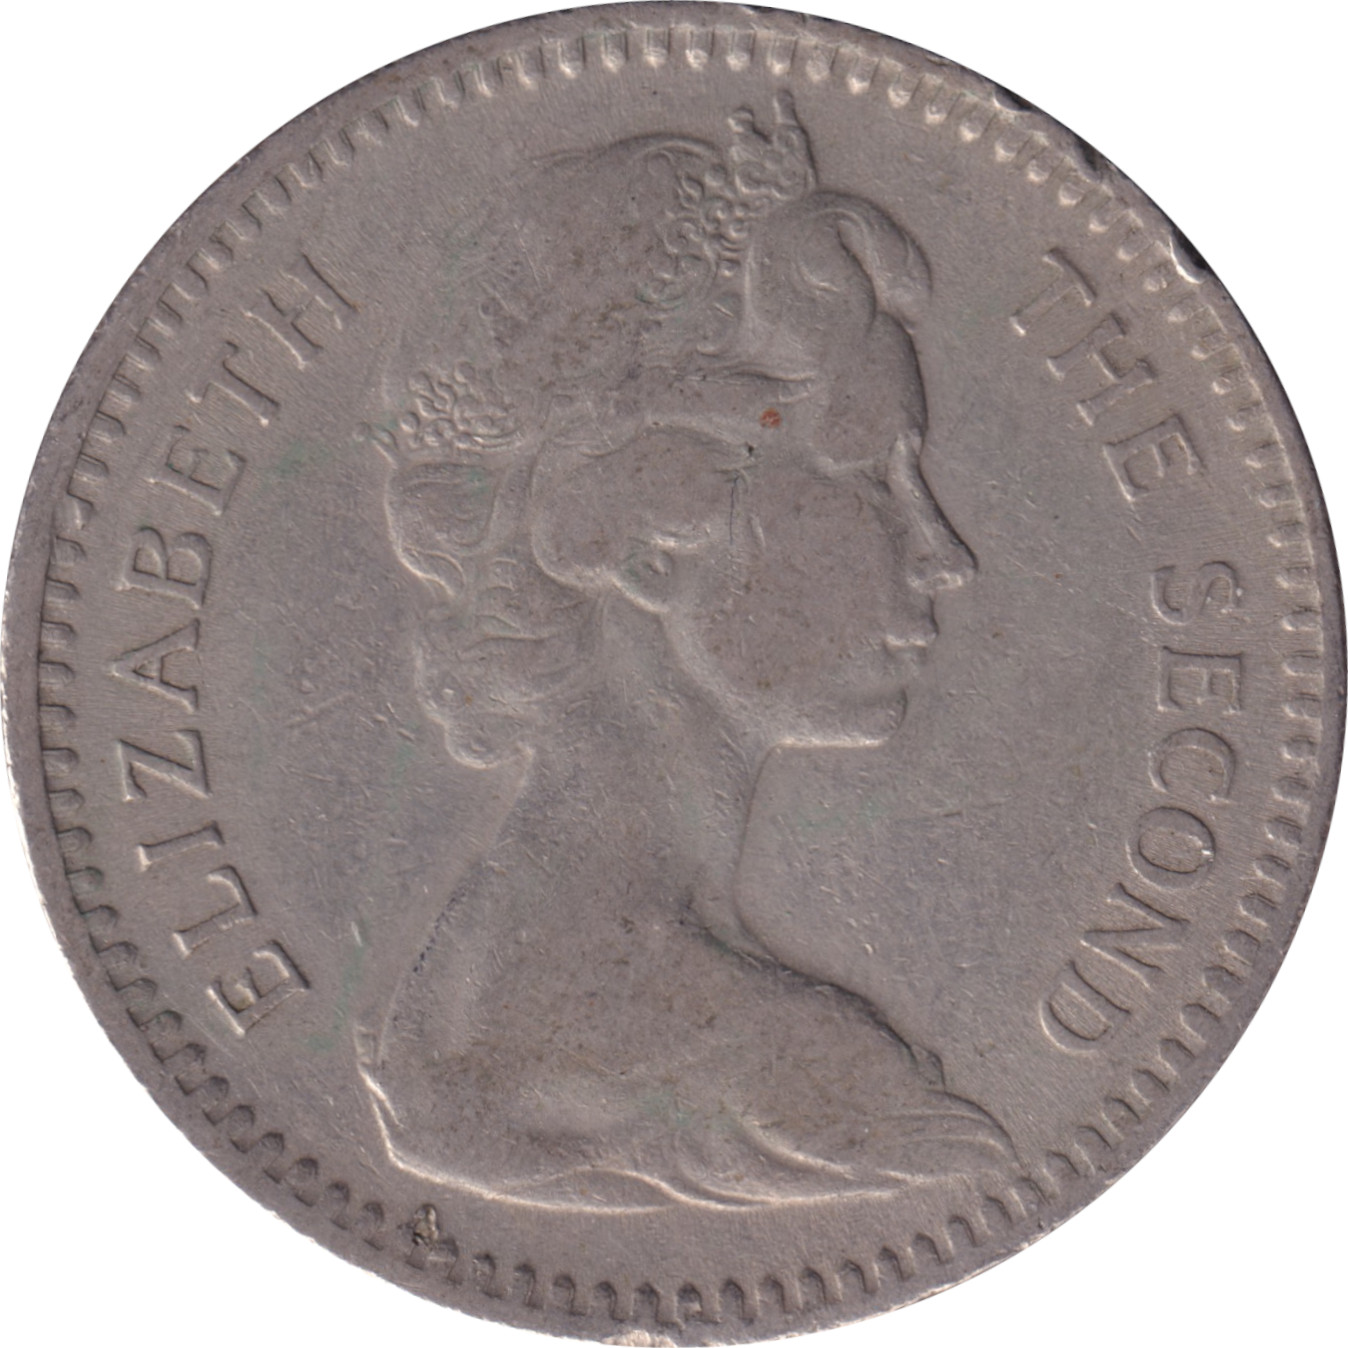 2 shillings - Elizabeth II